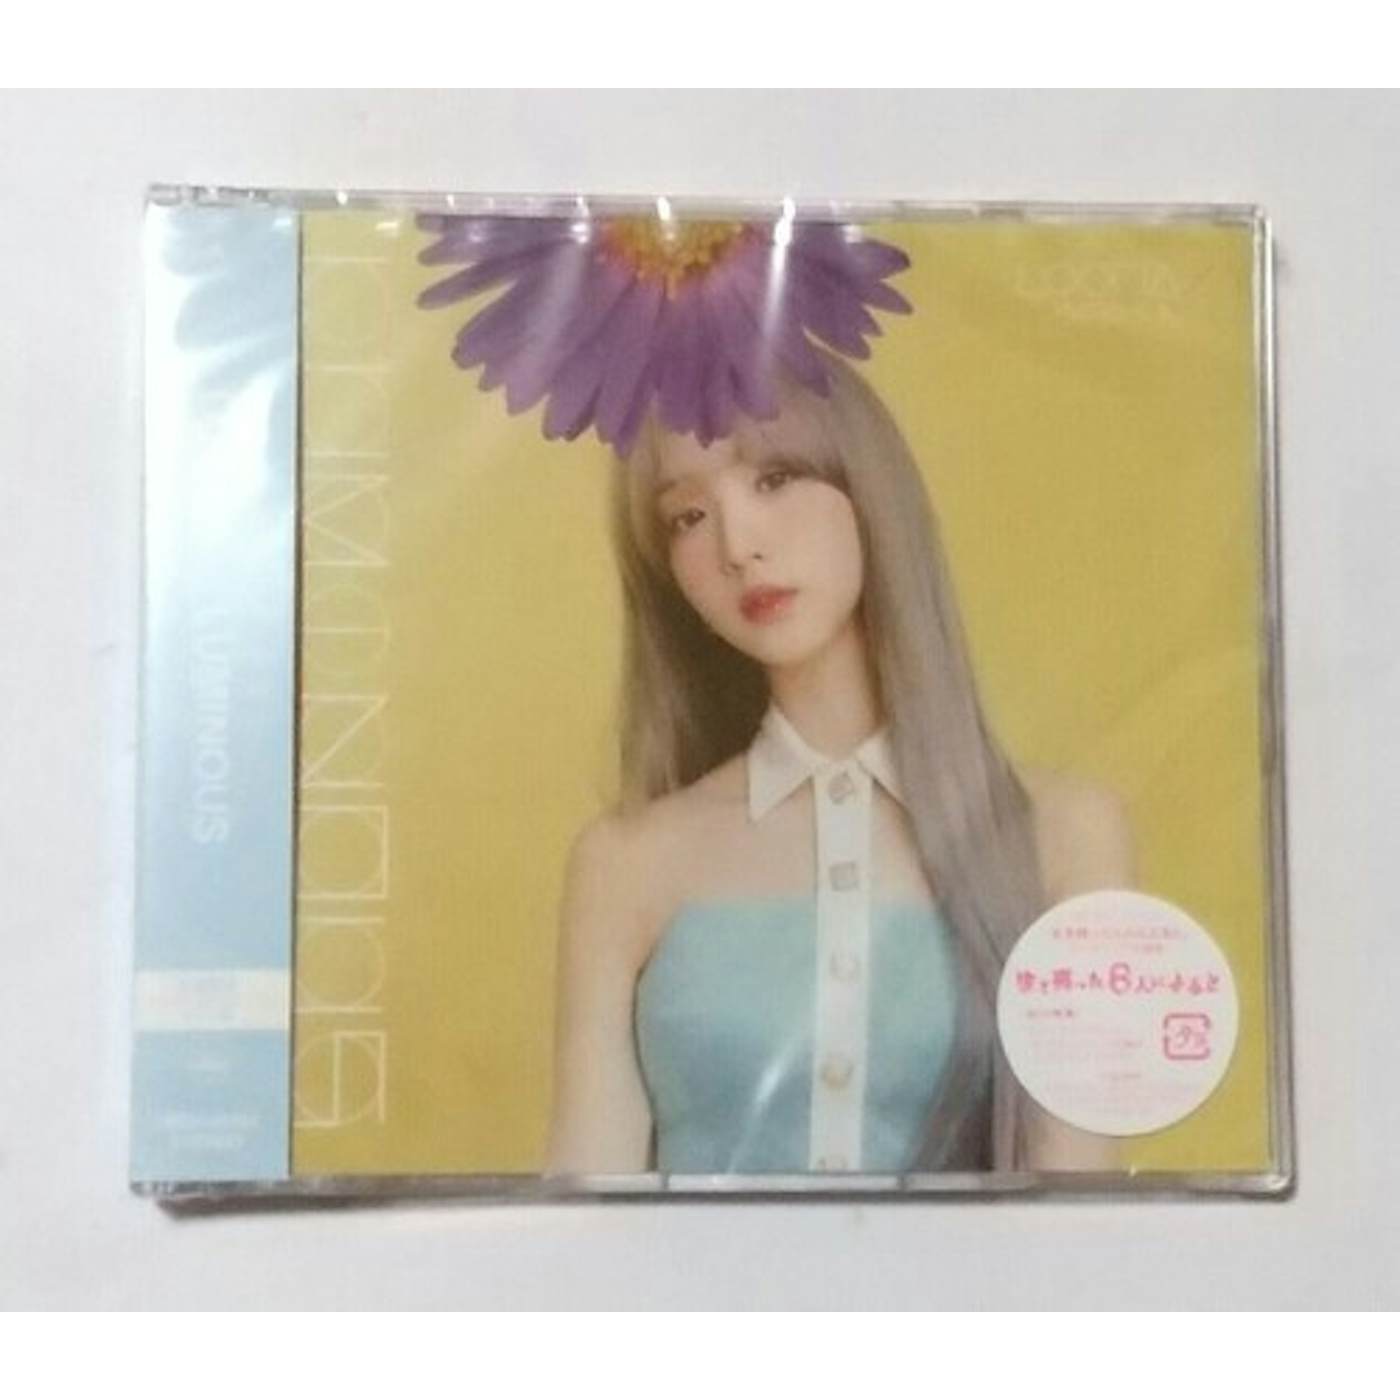 CDJapan : # (2nd Mini Album) (Normal B Ver.) [Import Disc] LOONA CD Album